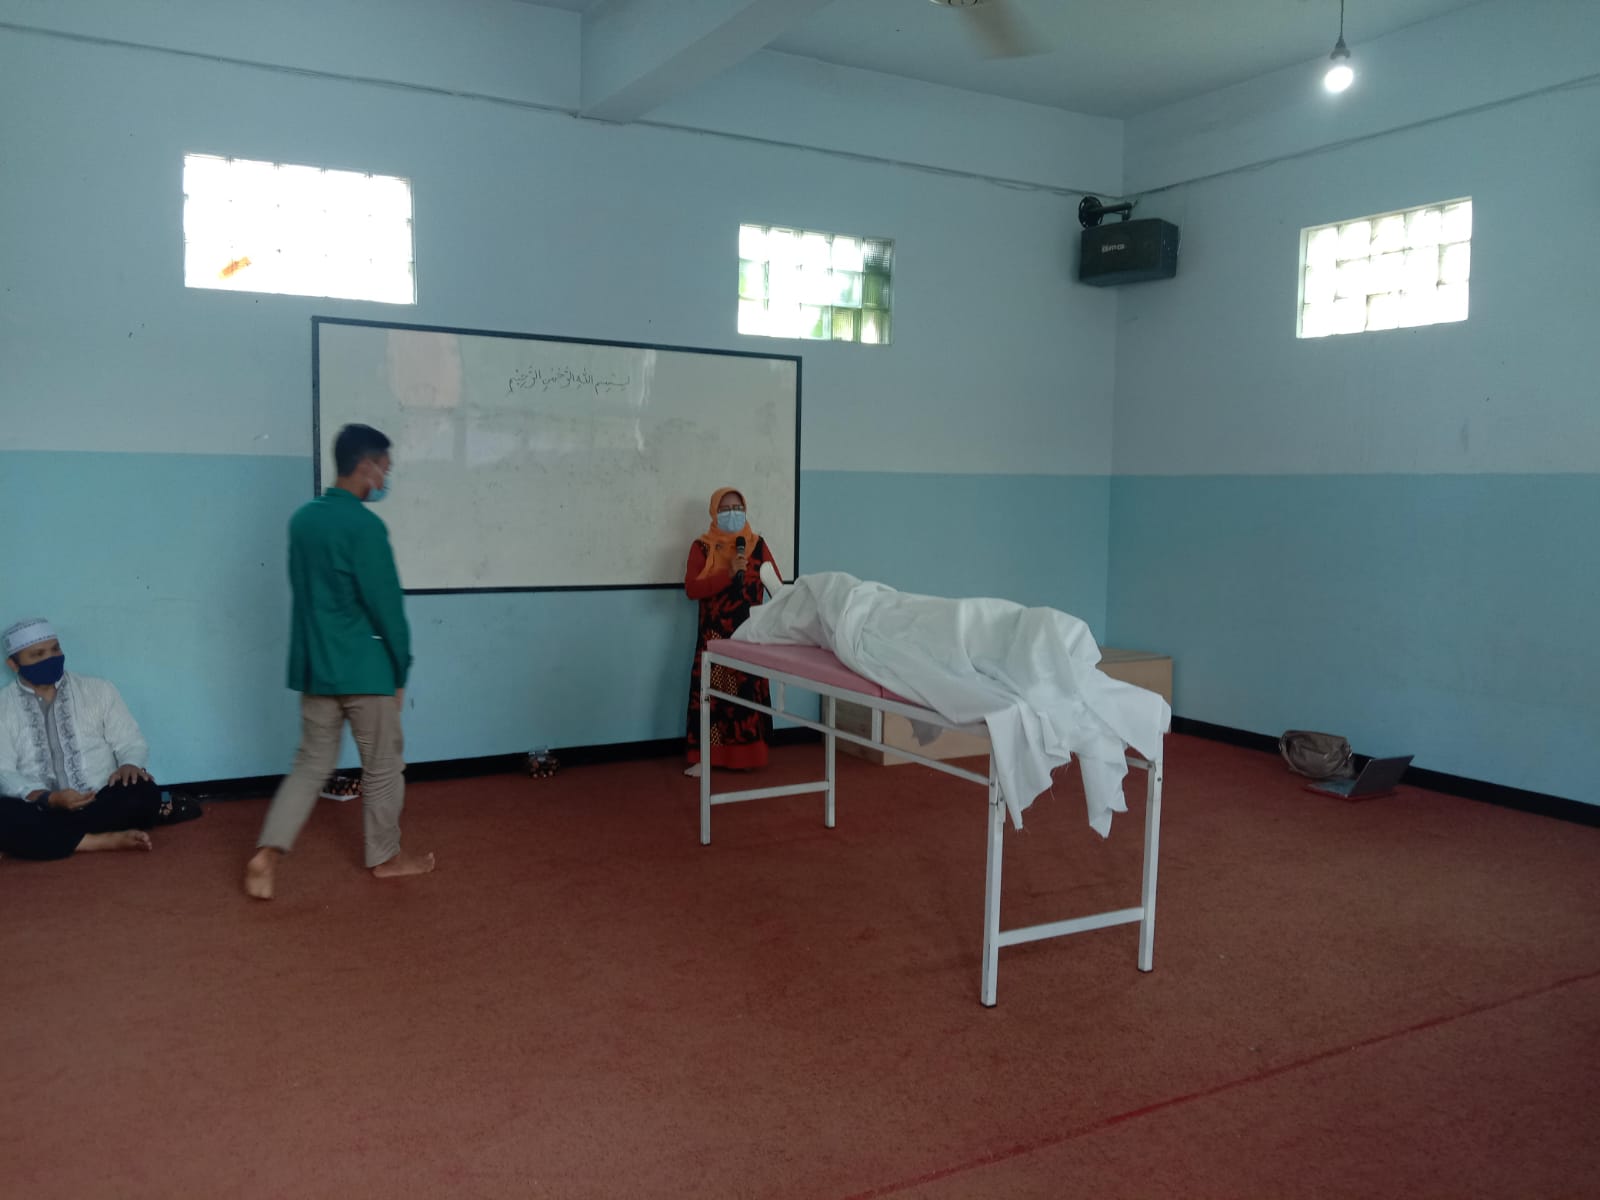 Salah satu pemateri sedang menyampaikan terkait pemulasaran jenazah covid-19 di Aula TK Miftahus Shiddiq Kp. Kihapit Timur RT 02/RW 09, Kelurahan Leuwigajah, Kecamatan Cimahi Selatan, Kota Cimahi.